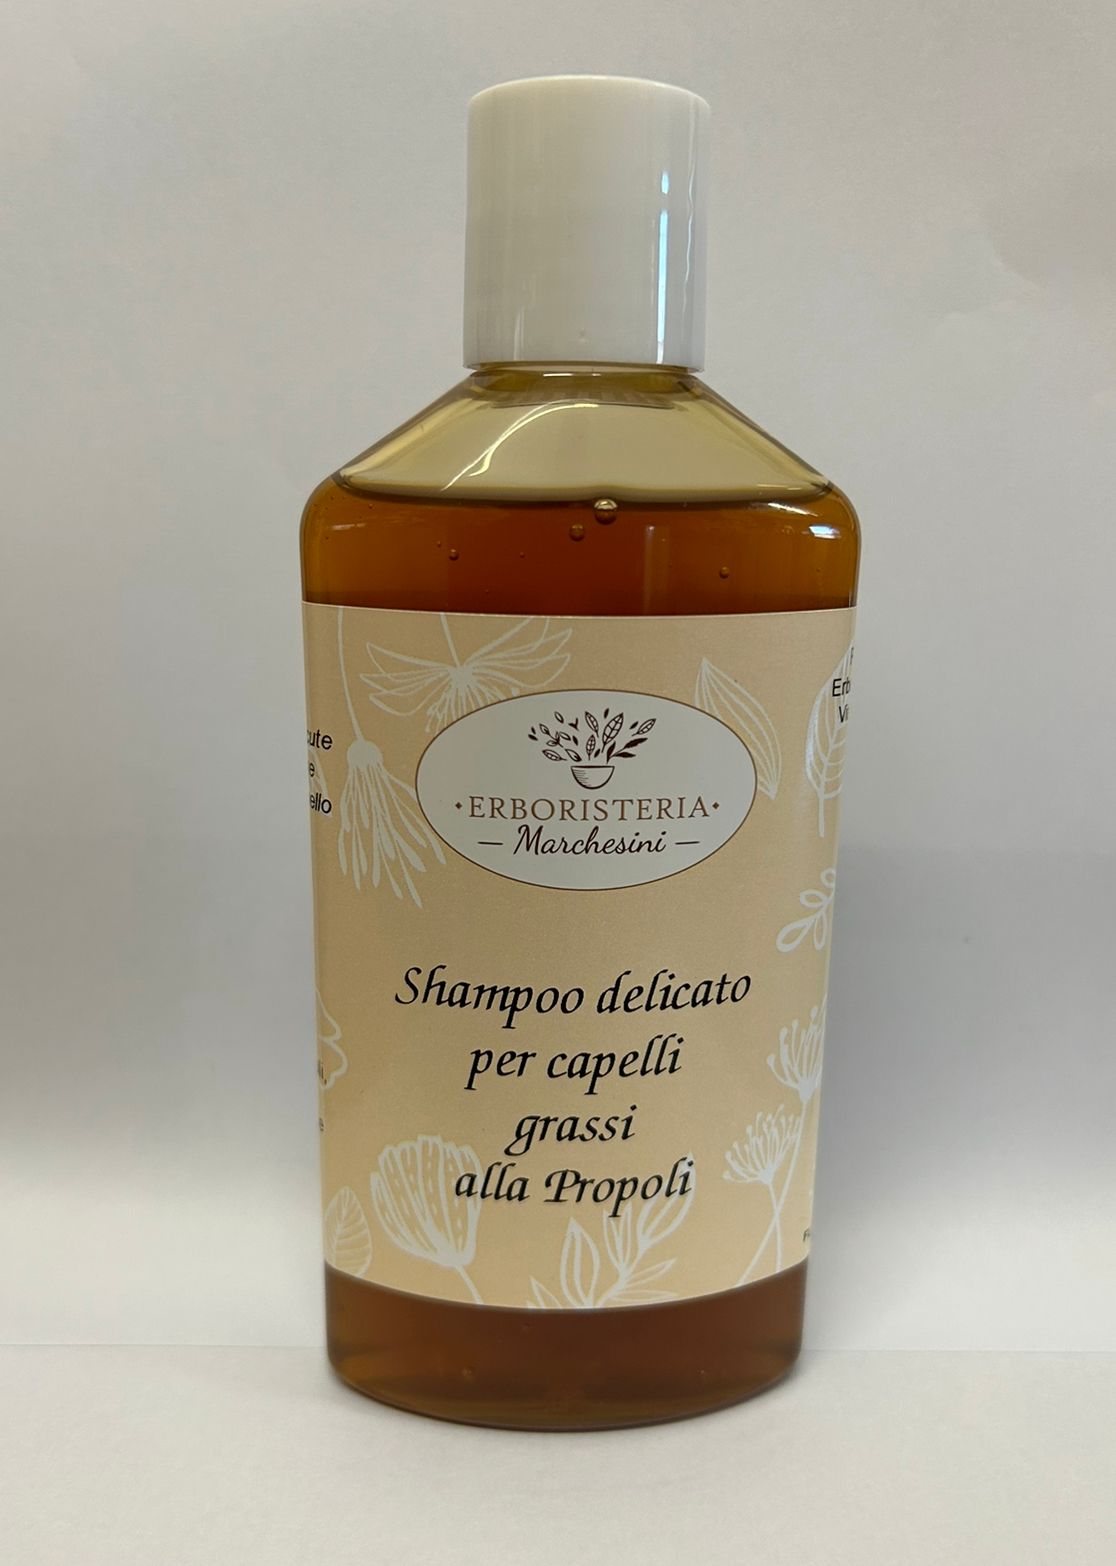 Shampoo delicato per capelli grassi alla Propoli